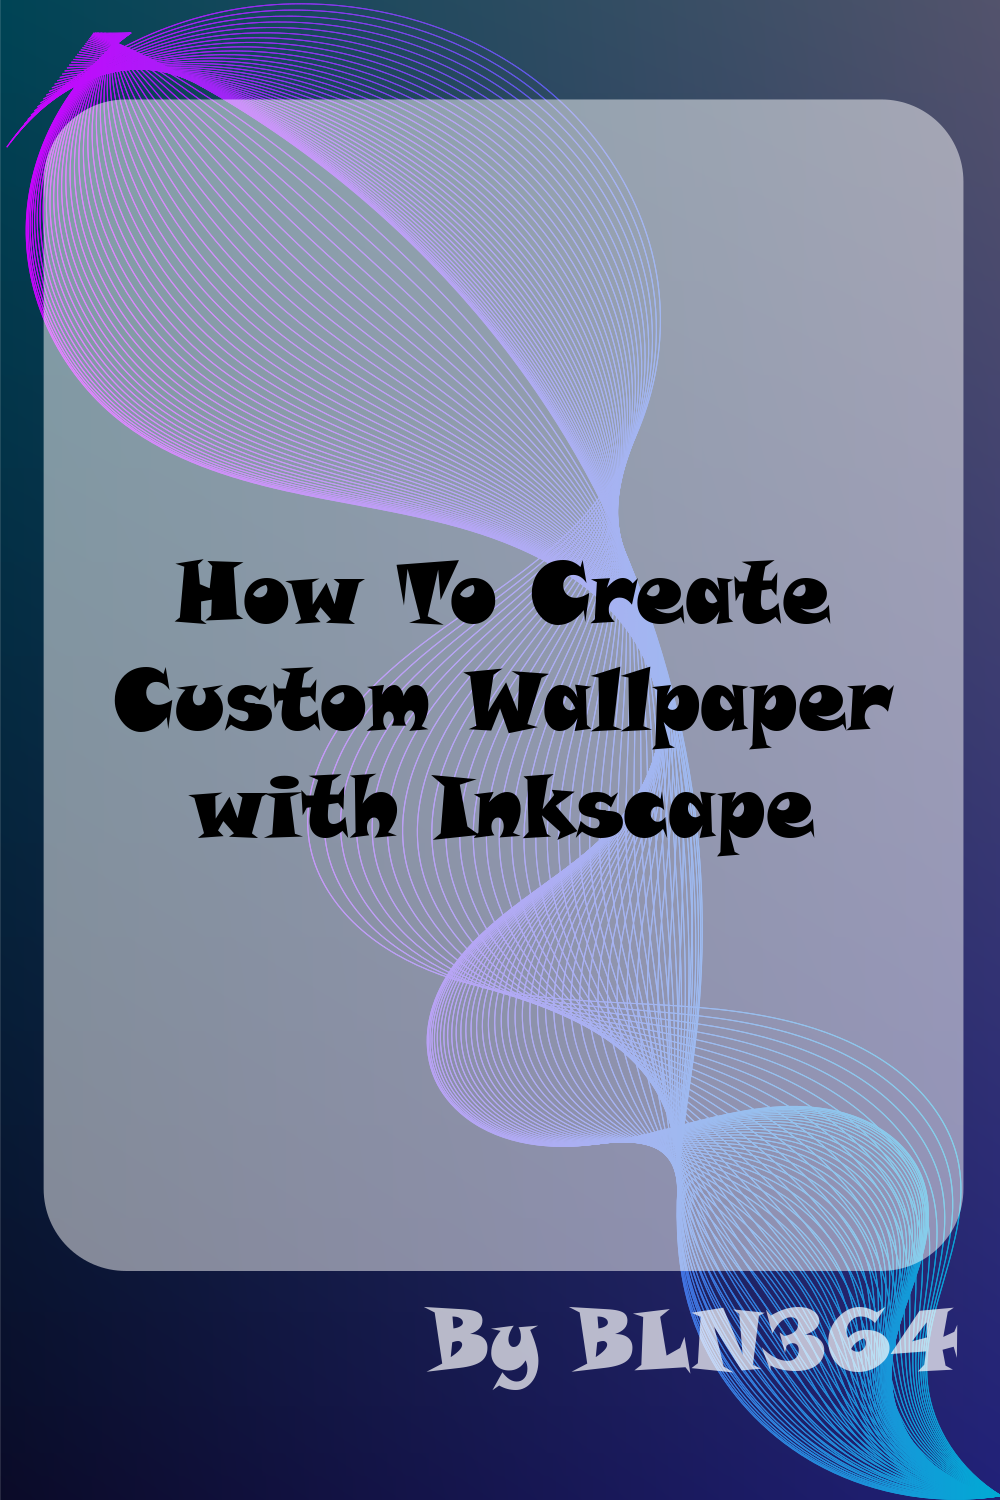 ubiwalli3 | ubuntu wallpaper designed with inkscape | riza hylviu | Flickr